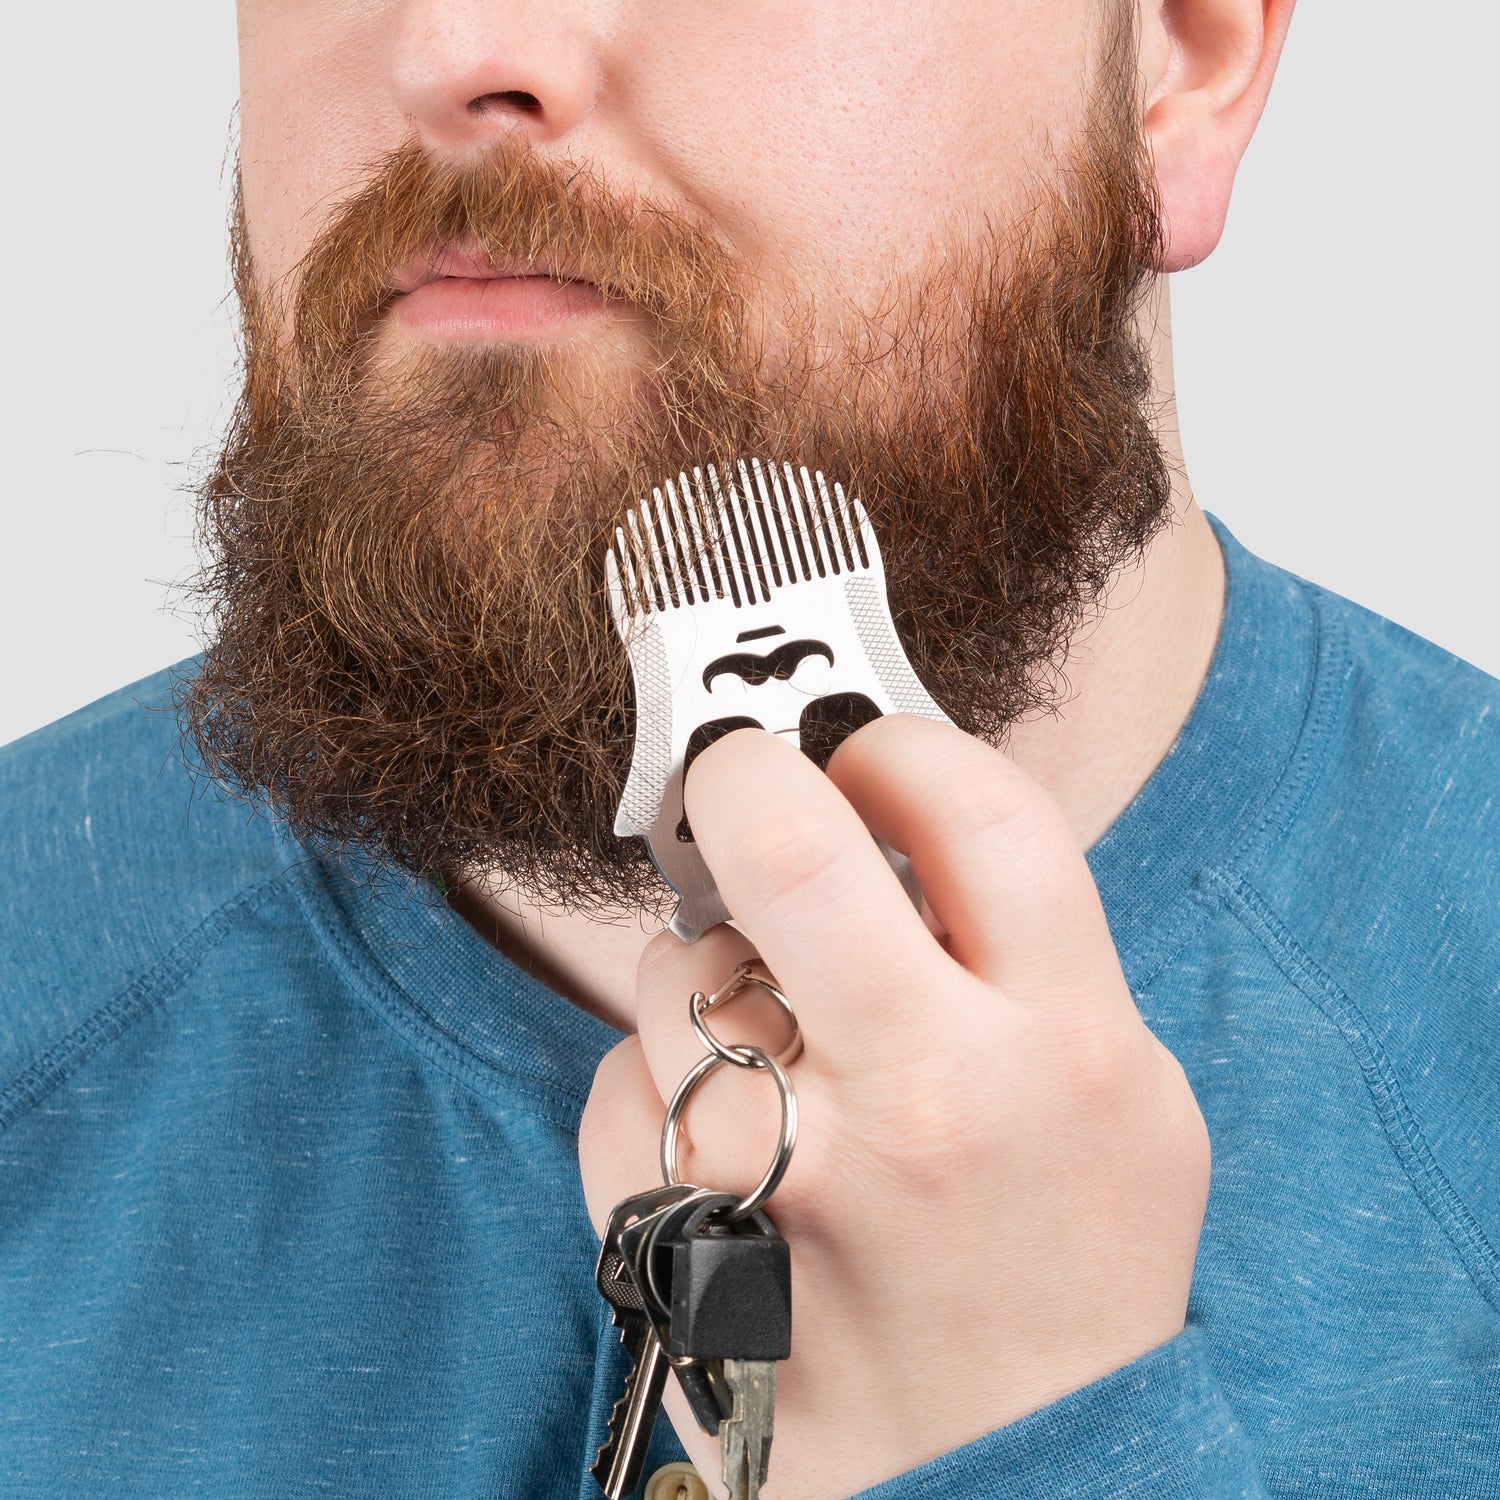 Peigne à barbe pour homme – Peigne, guide pour la coupe et l